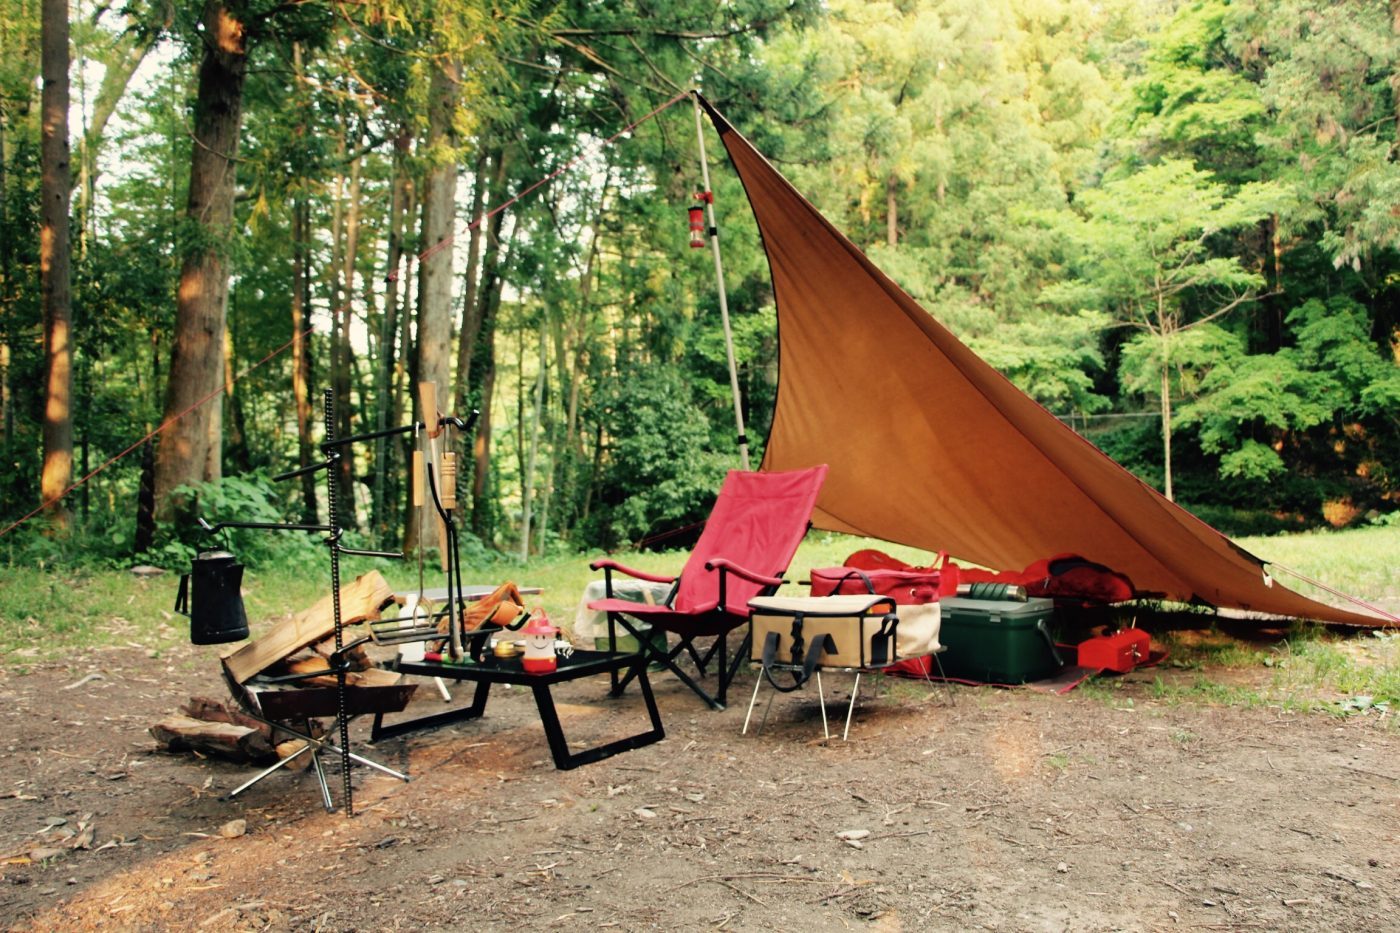 ソロキャンプを始めよう その ソロキャンプの楽しさを知ろう まとめ記事 キャンプ初心者向け総合情報ブログ Hyper Camp Creators